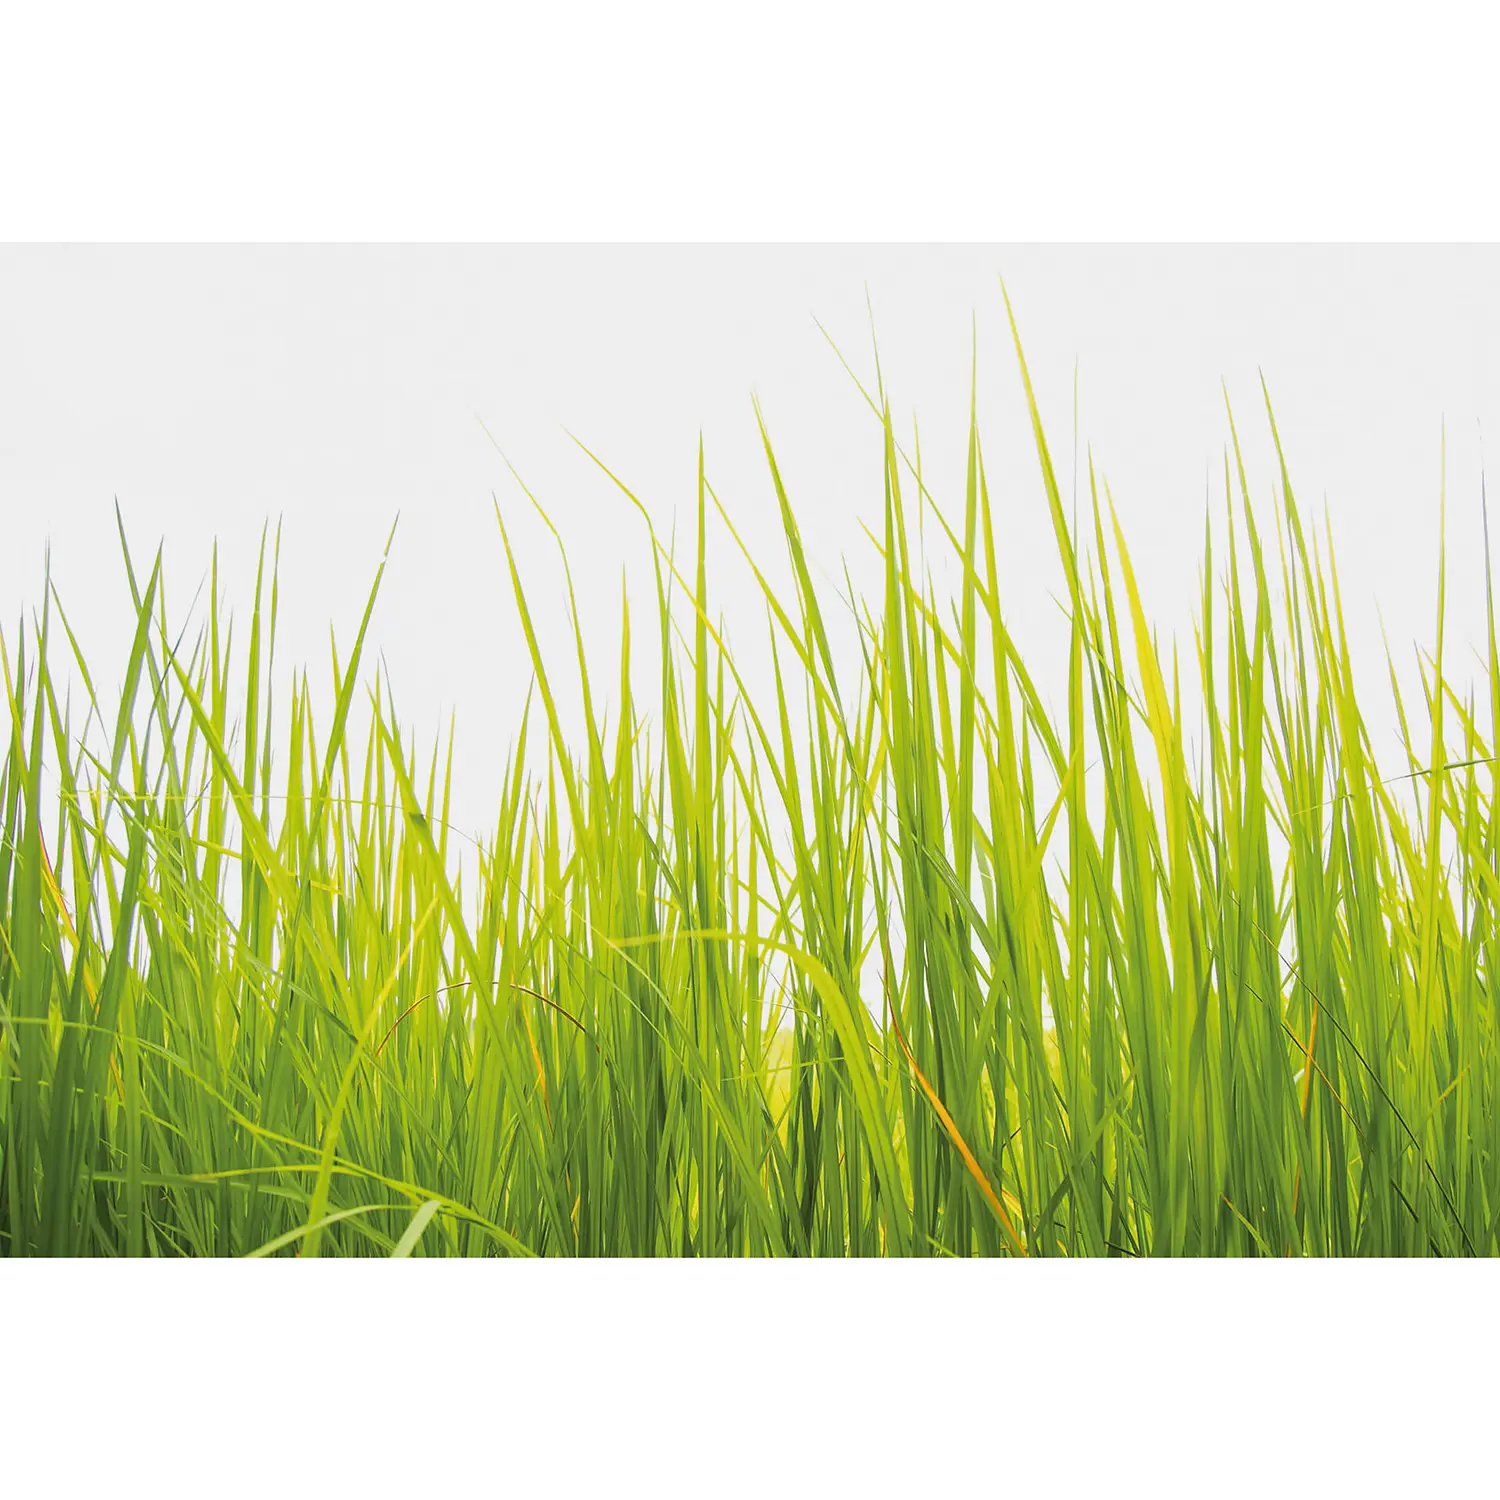 High Fototapete Grass